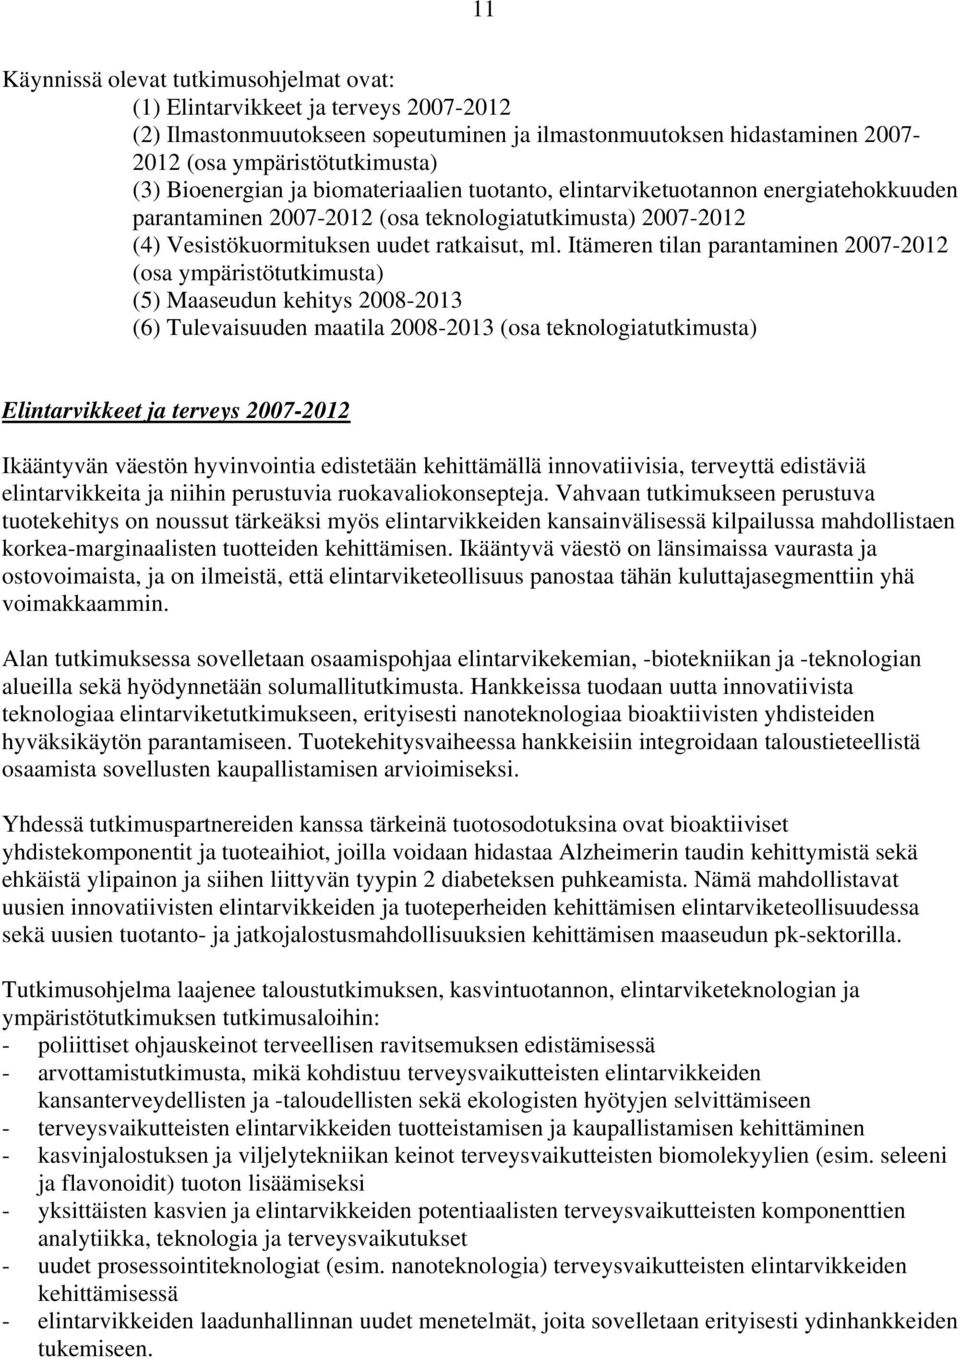 Itämeren tilan parantaminen 2007-2012 (osa ympäristötutkimusta) (5) Maaseudun kehitys 2008-2013 (6) Tulevaisuuden maatila 2008-2013 (osa teknologiatutkimusta) Elintarvikkeet ja terveys 2007-2012